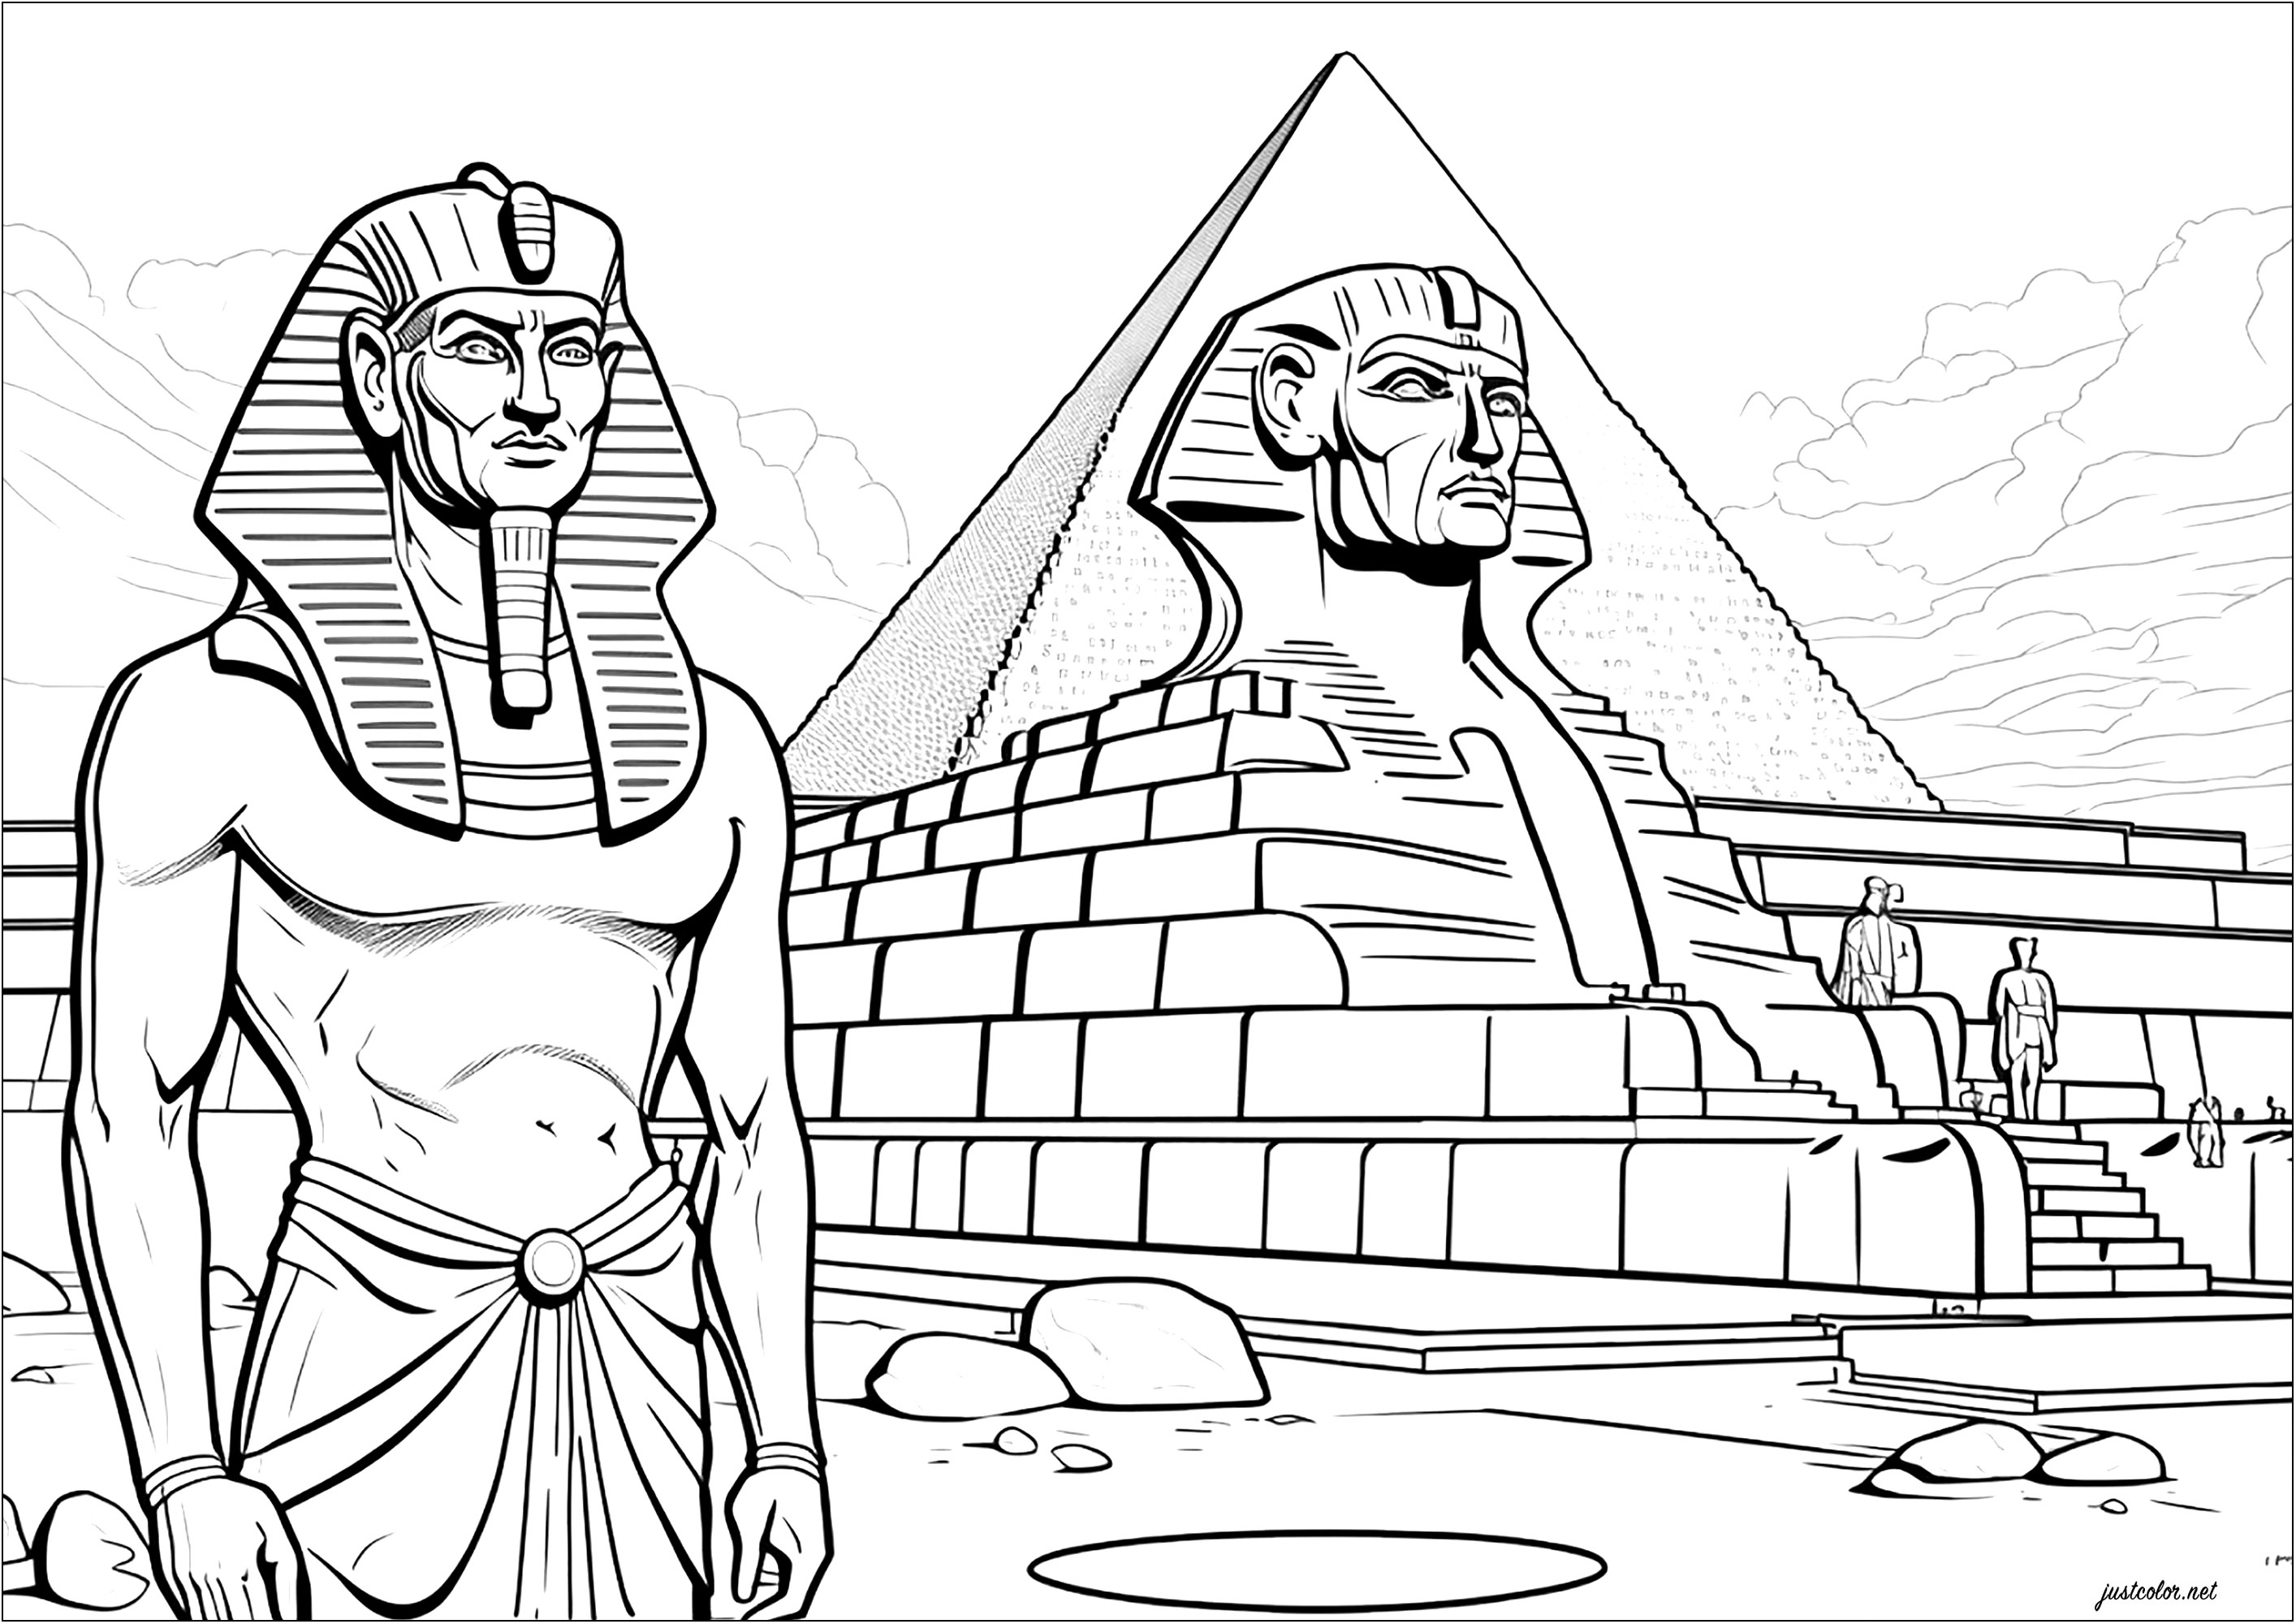 Il faraone davanti alla sua sfinge e alla sua piramide. Questa pagina da colorare raffigura un faraone in piedi davanti a una sfinge che lo rappresenta e a una grande piramide. È una magnifica rappresentazione dell'antico Egitto e della sua grandezza.